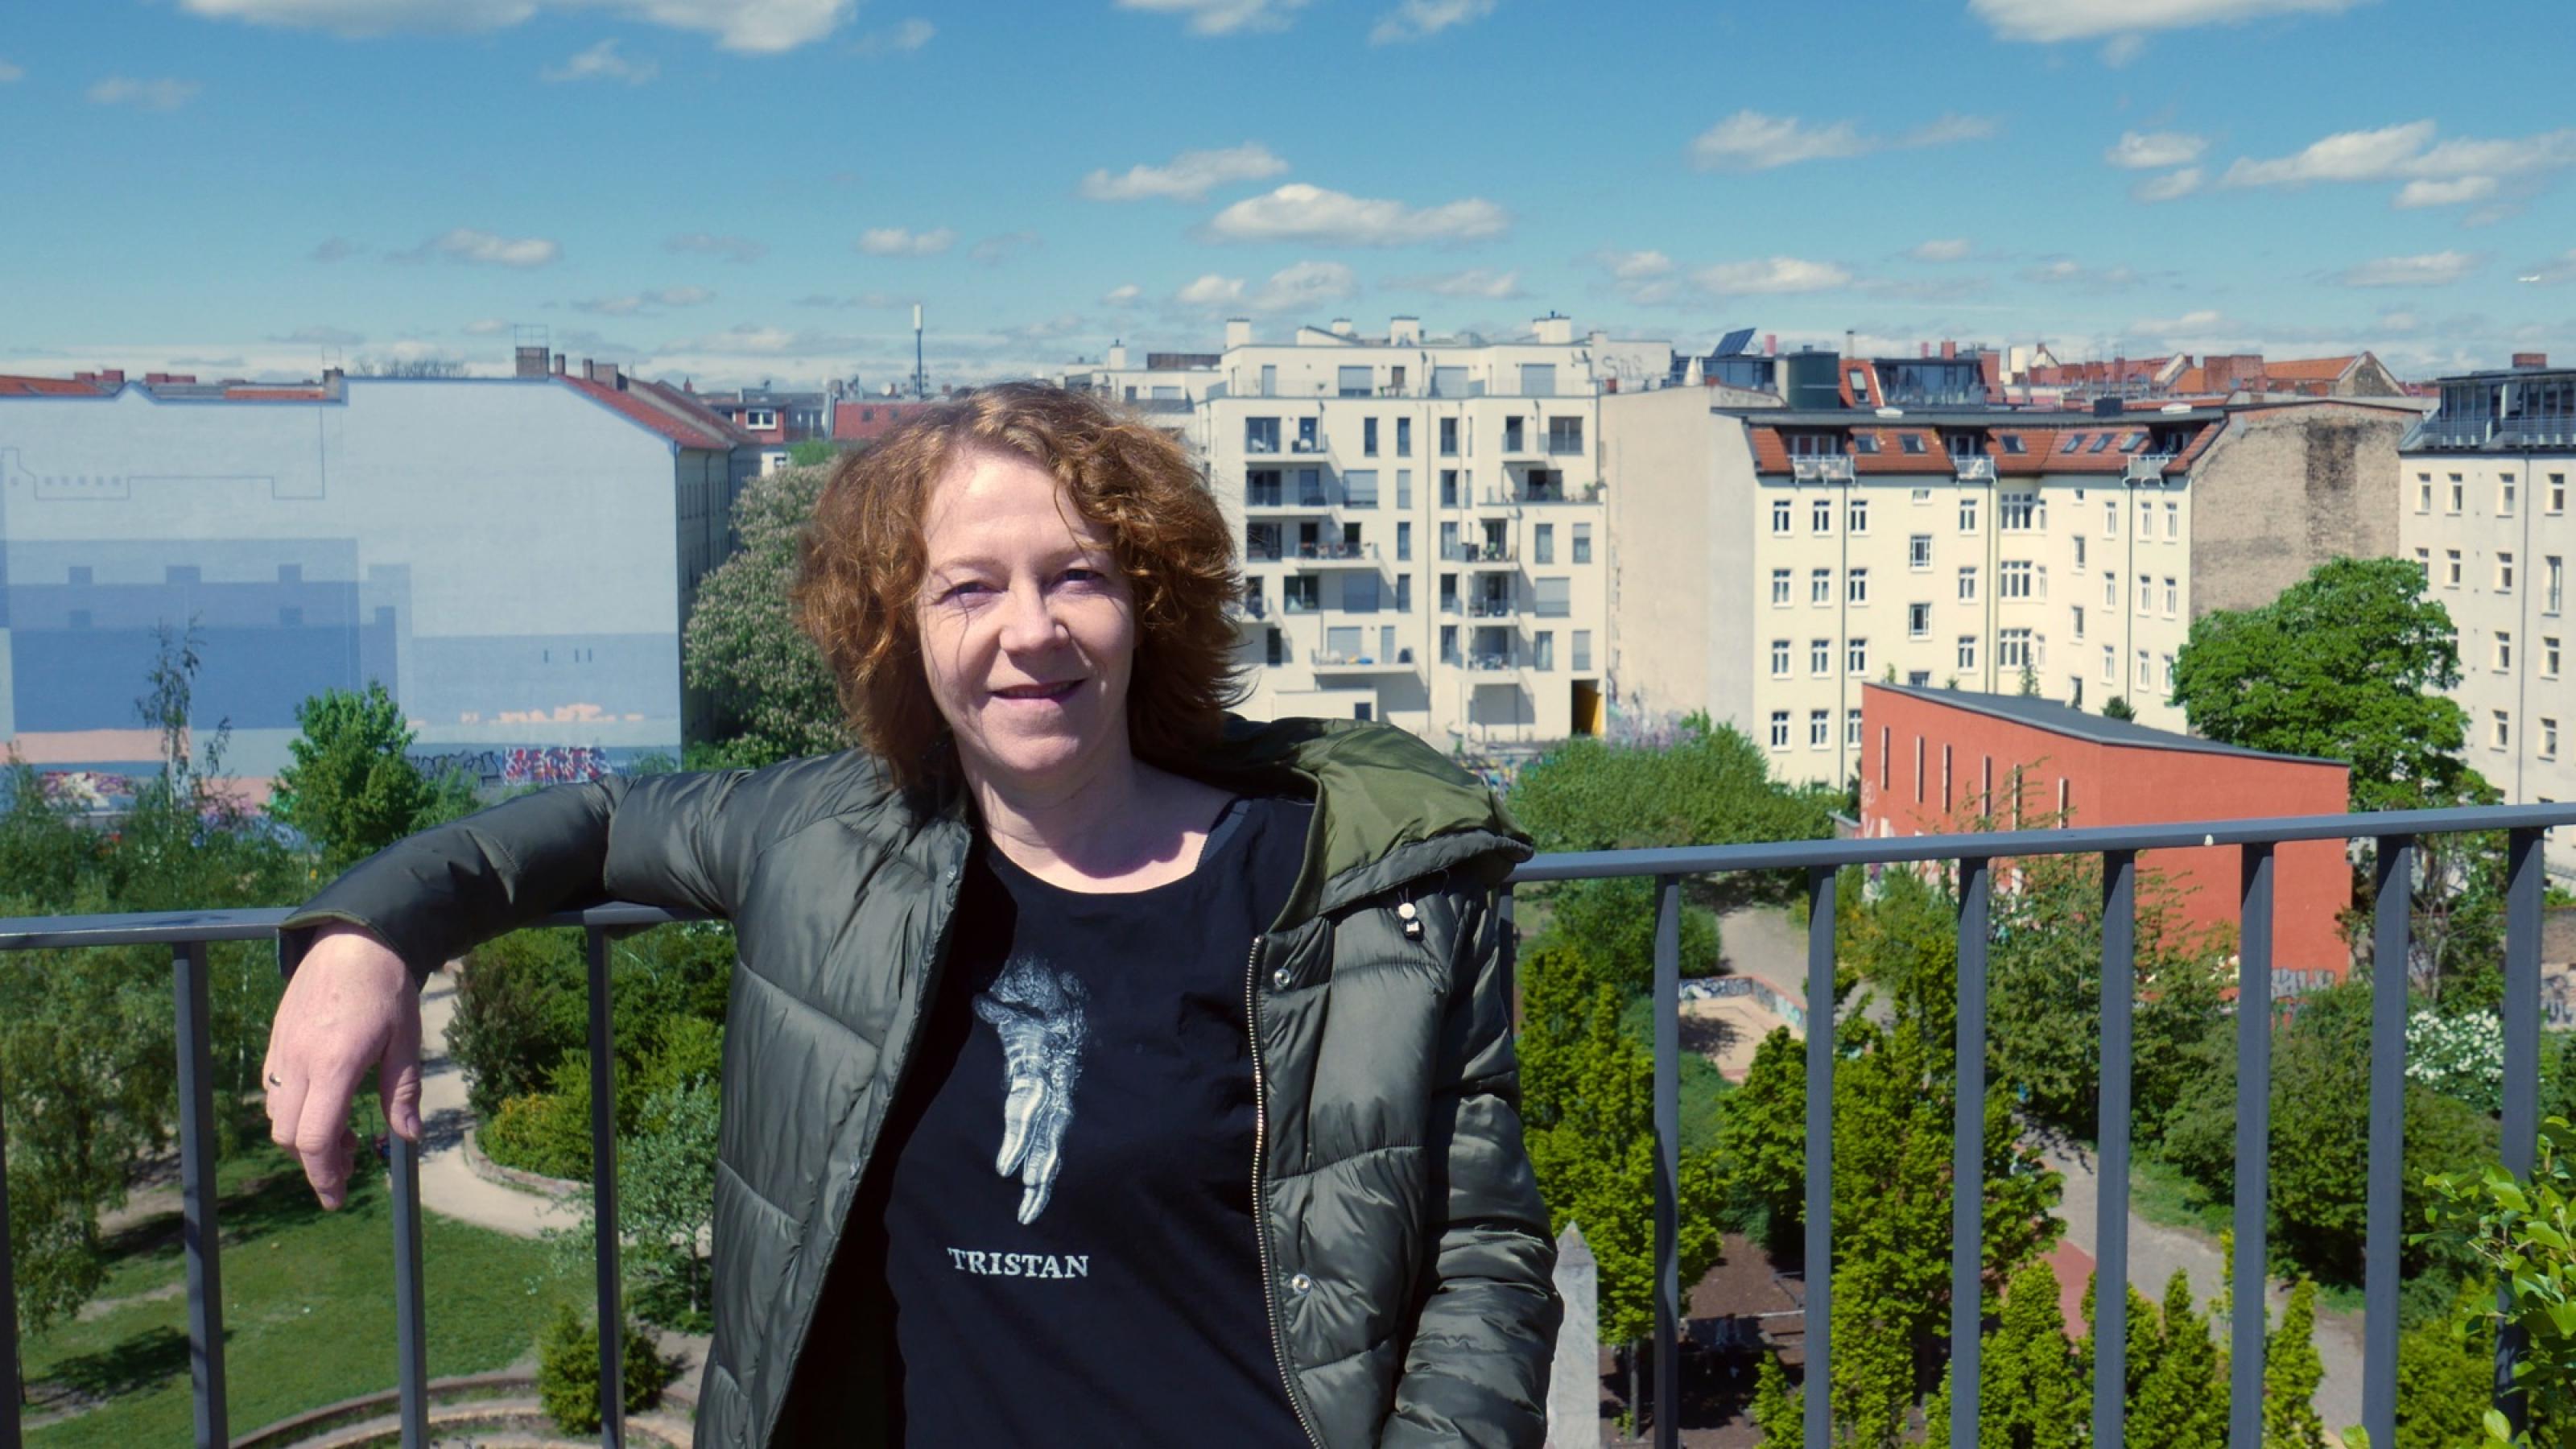 Christiane Habermalz lehnt an einem blauem Geländer. Im Hintergrund kann man einen Park und mehrstöckige Wohnhäuser erkennen.